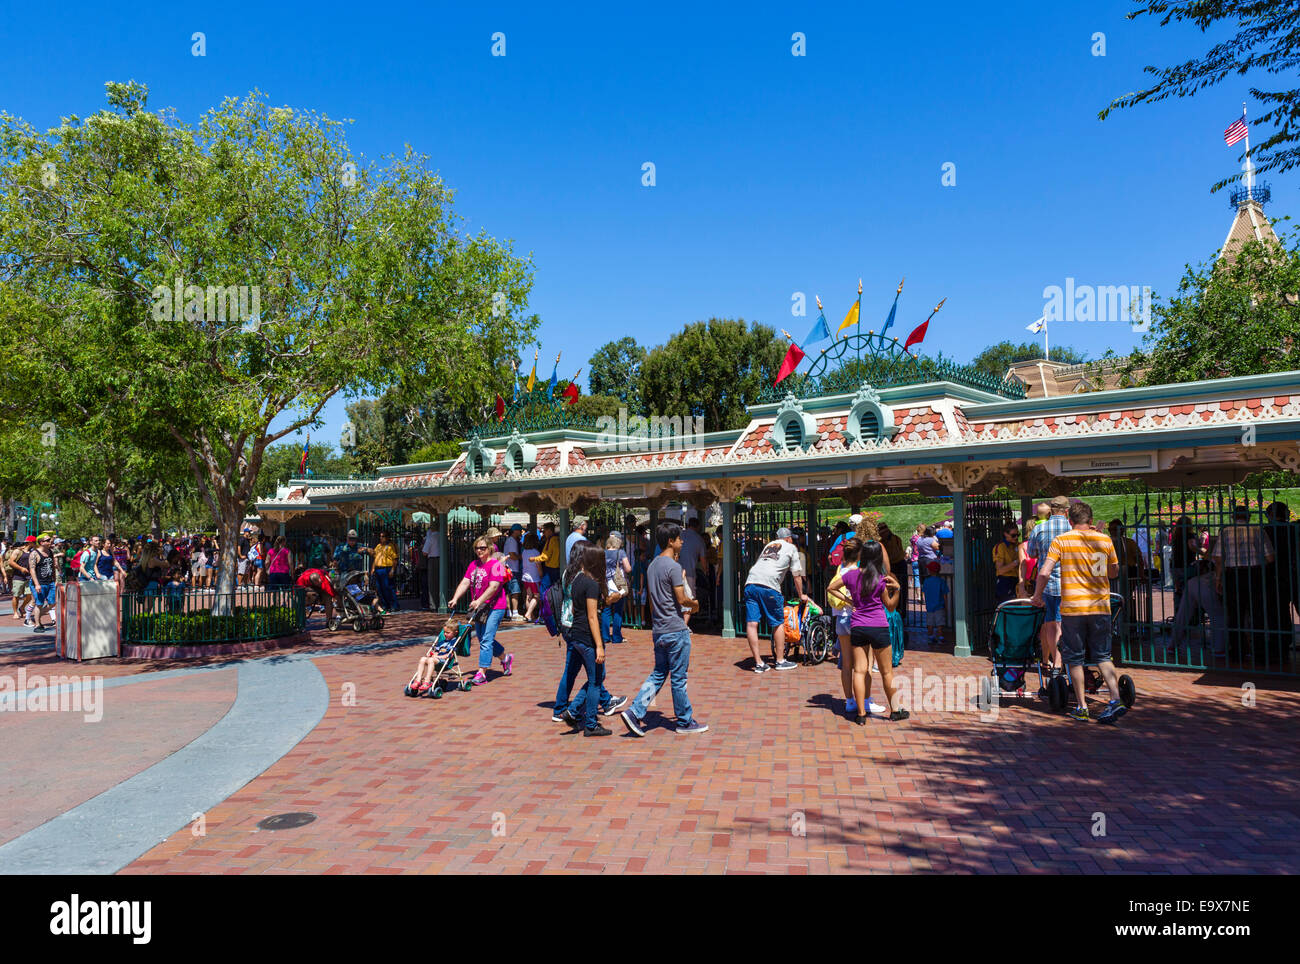 Drehkreuze am Eingang zum Disneyland Resort in Anaheim, Orange County, in der Nähe von Los Angeles, Kalifornien, USA Stockfoto